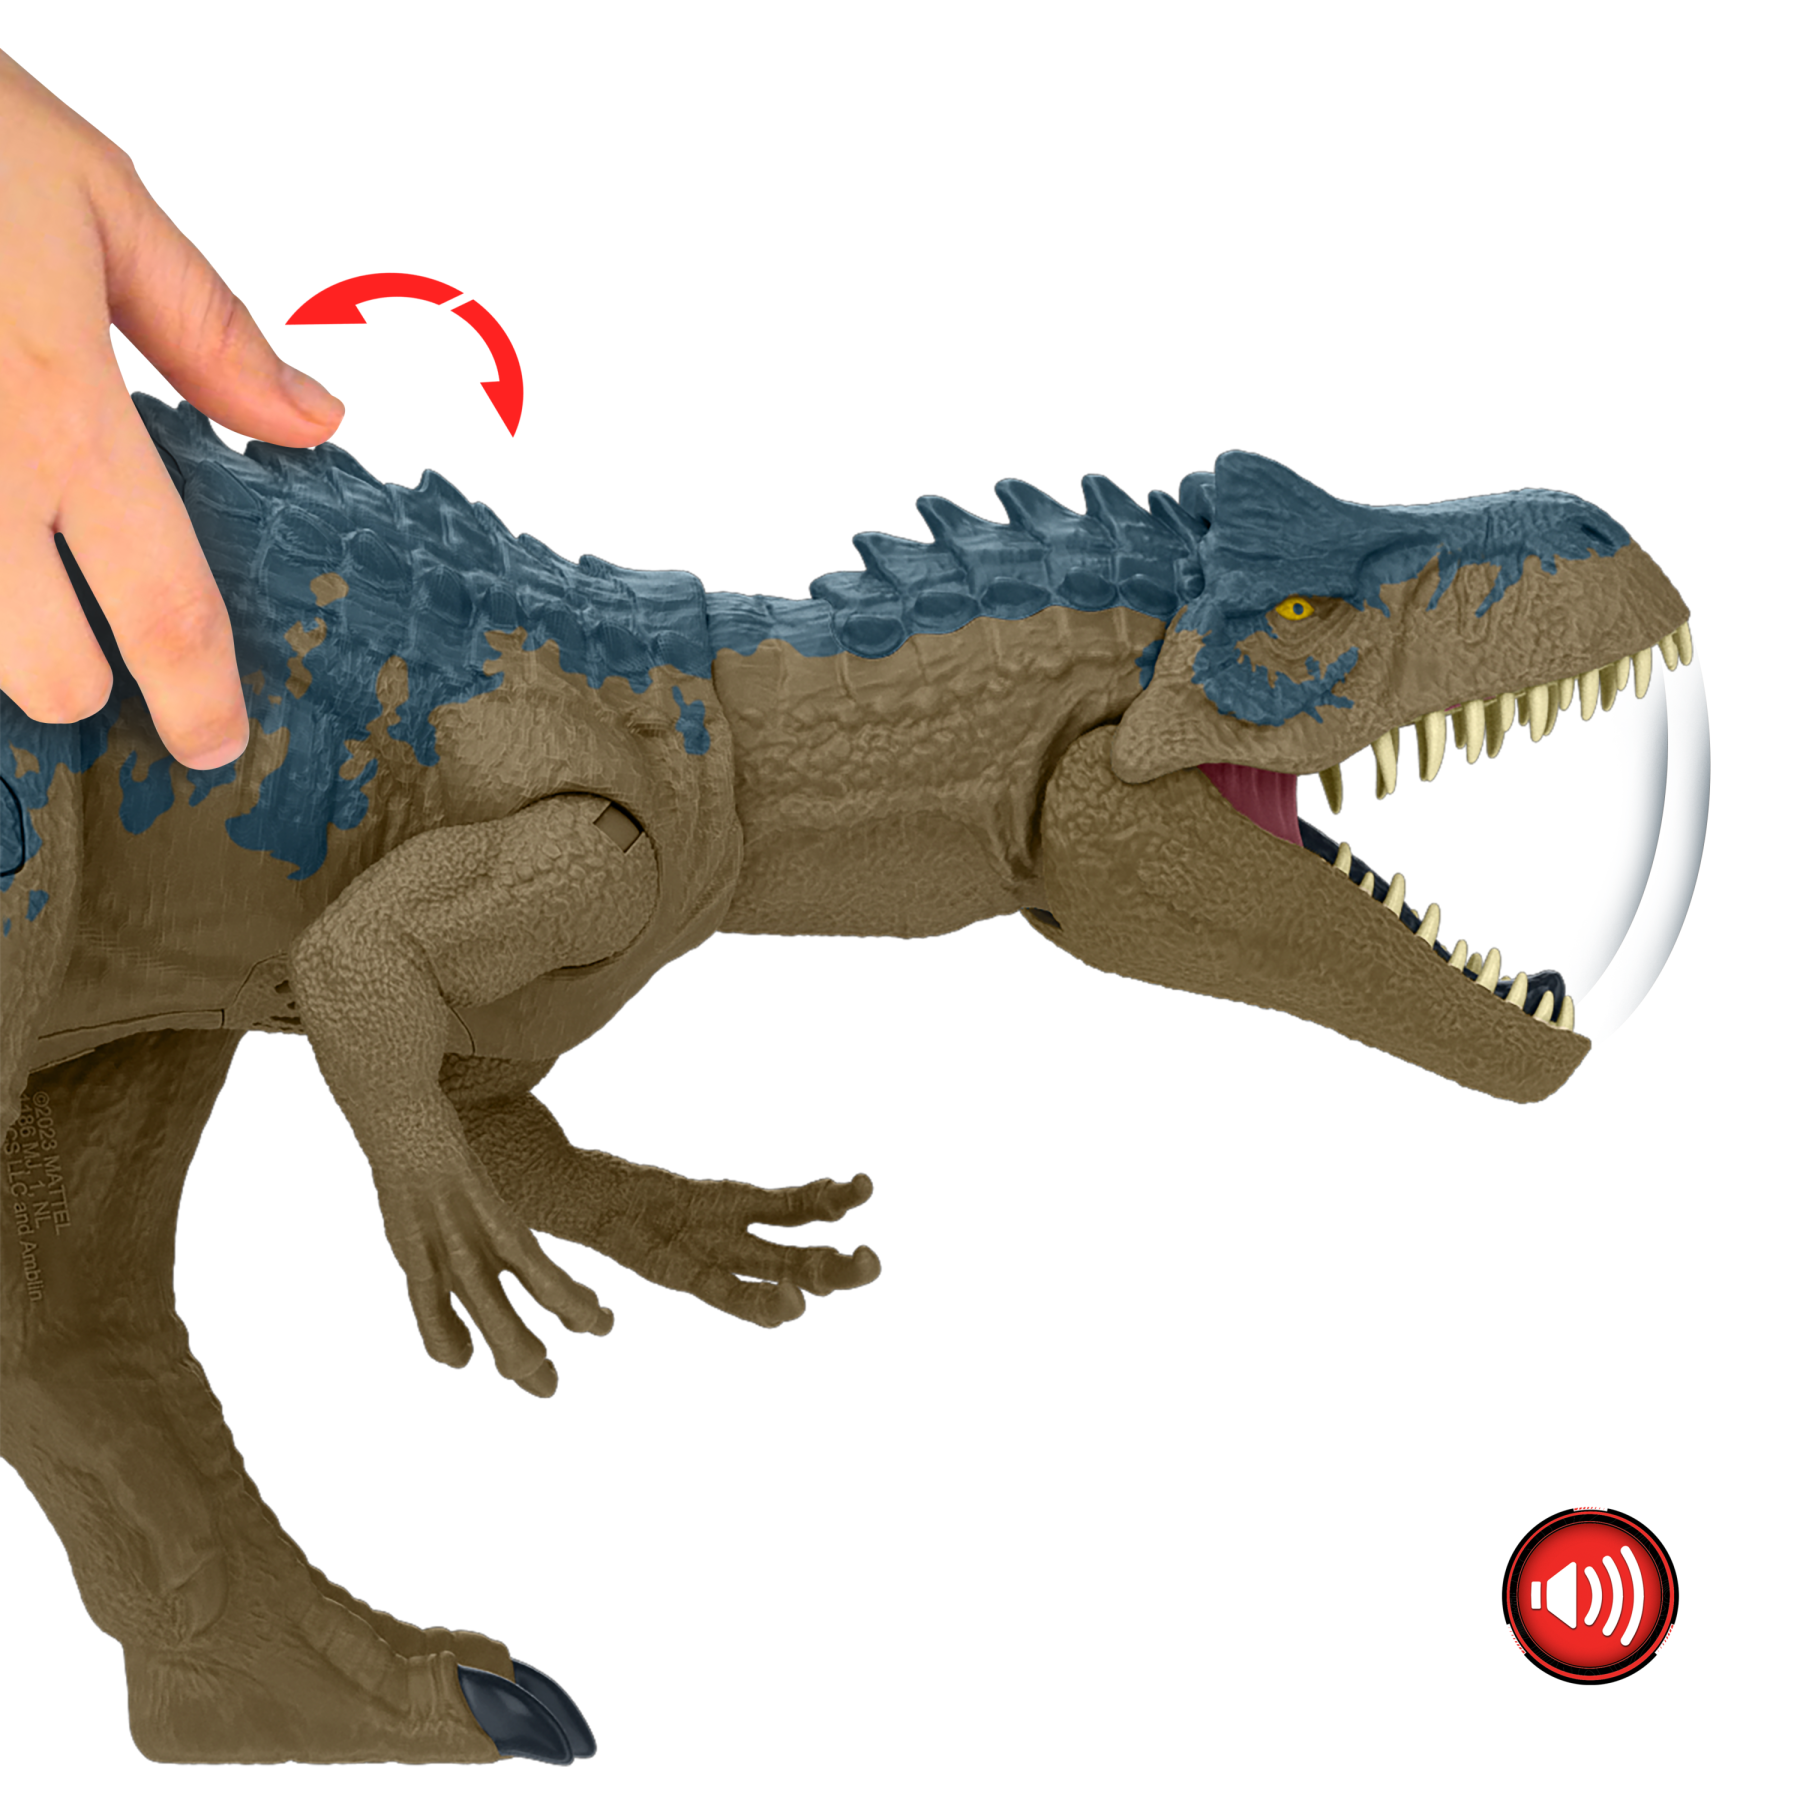 Jurassic world - allosauro furia selvaggia, dinosauro con aculei da combattimento e ruggito, azione d'attacco con il collo e morso attivabili con il pulsante - Jurassic World